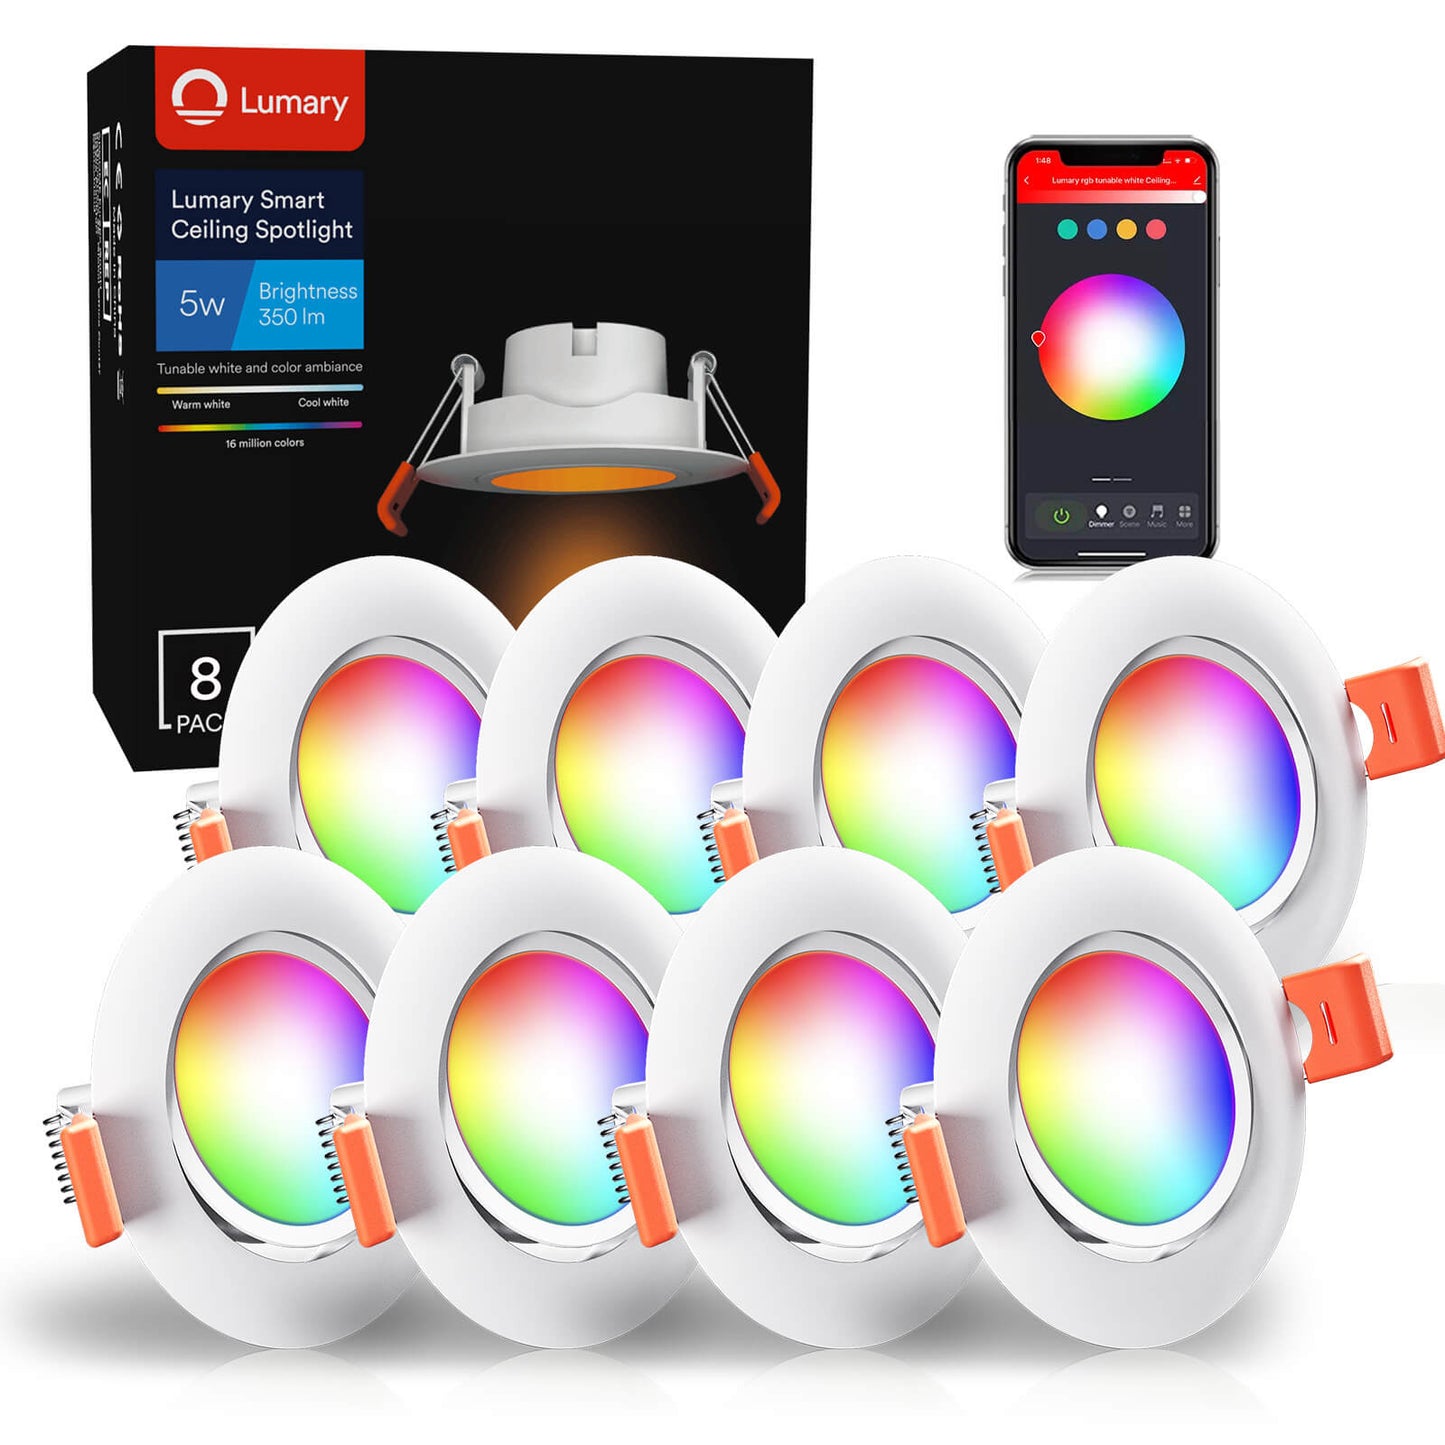 Lumary® 5W Smart Faretto LED da incasso Spot Dimmerabile, 8 pezzi